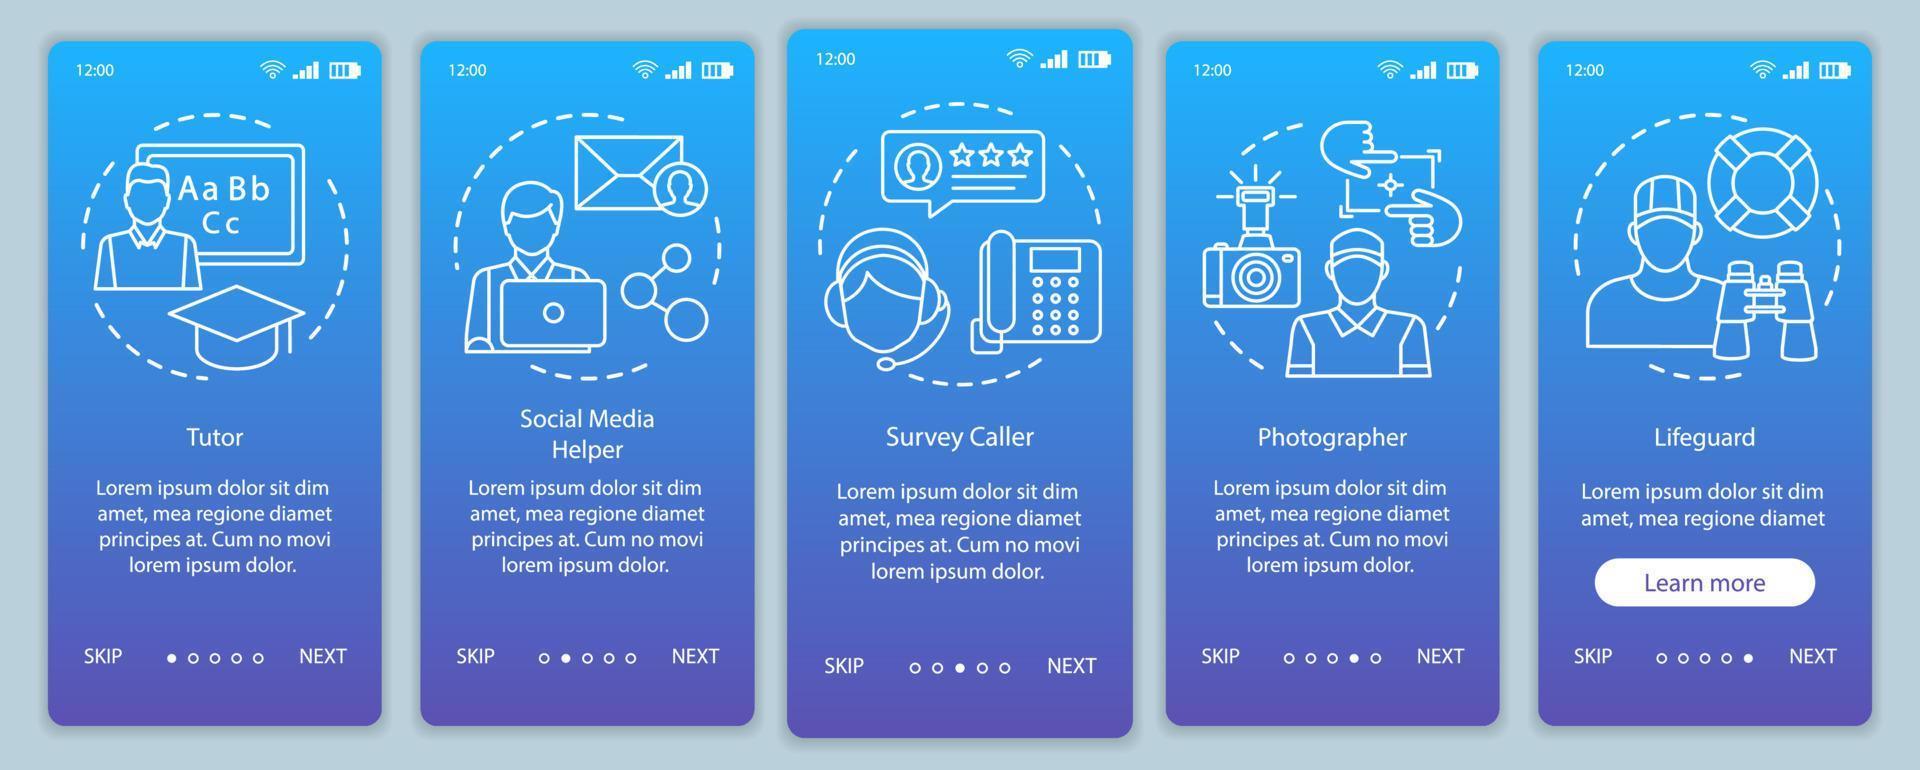 deltidsjobb blå onboarding mobil app sida skärm vektor handledare, fotograf, badvakt. genomgång av webbplatssteg med linjära illustrationer. ux, ui, gui smartphone gränssnitt koncept